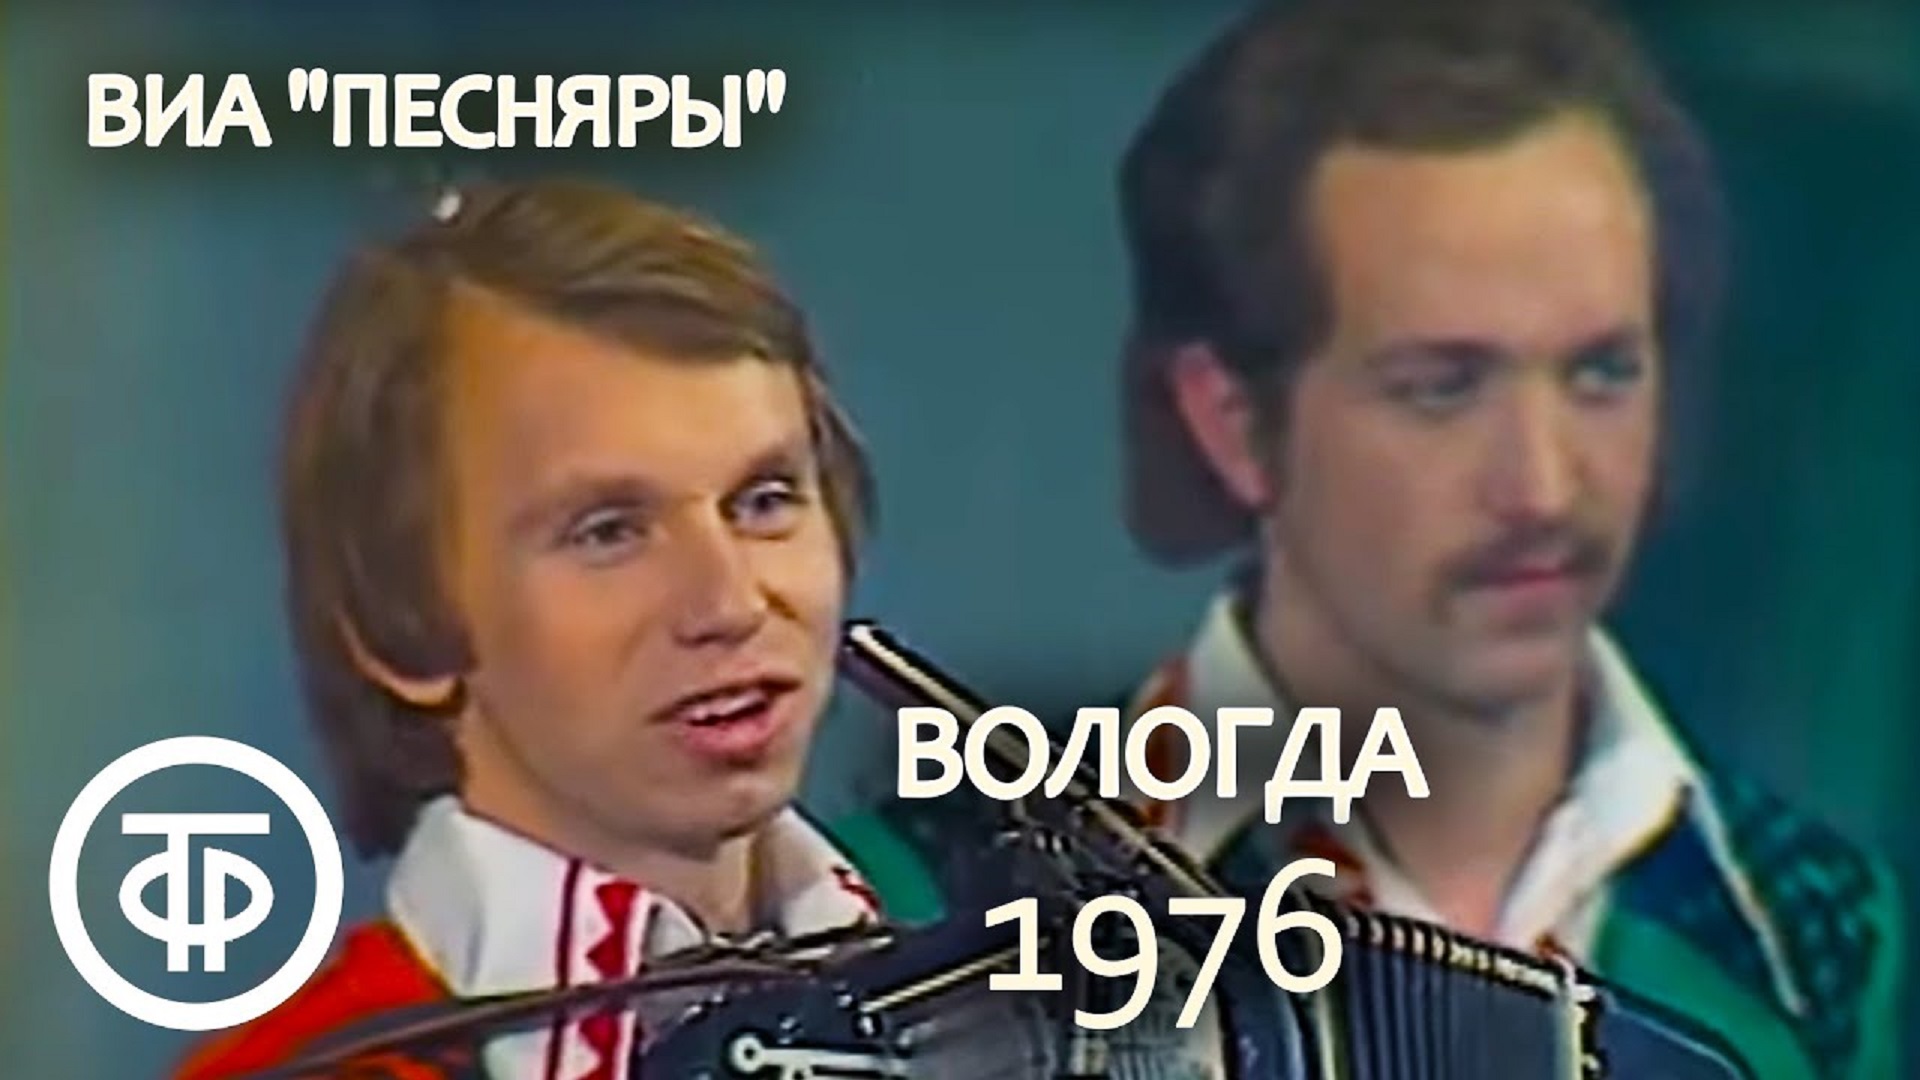 В вологде где где где слушать. Песняры Вологда 1976. Кашепаров Песняры.